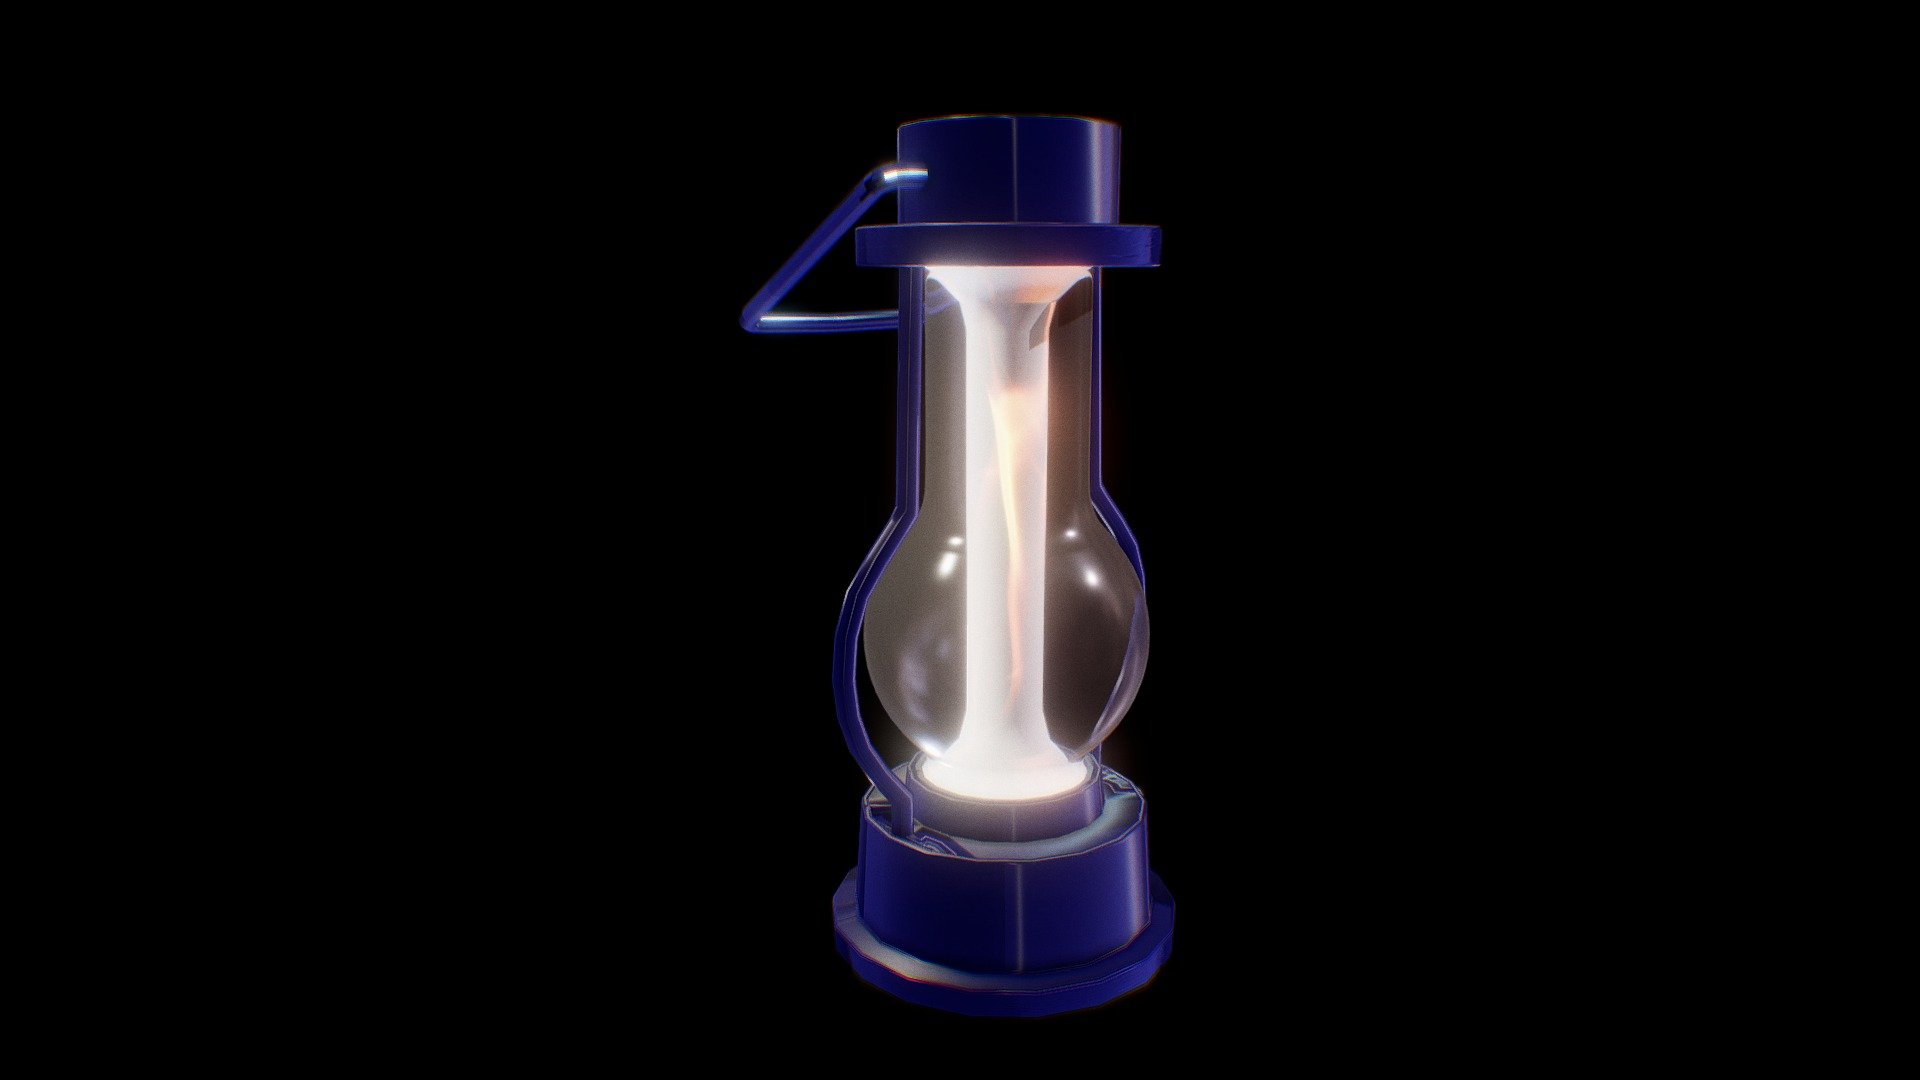 Camping lantern
Magic Lantern - Magic Lantern - Download Free 3D model by MAN2020 3d model